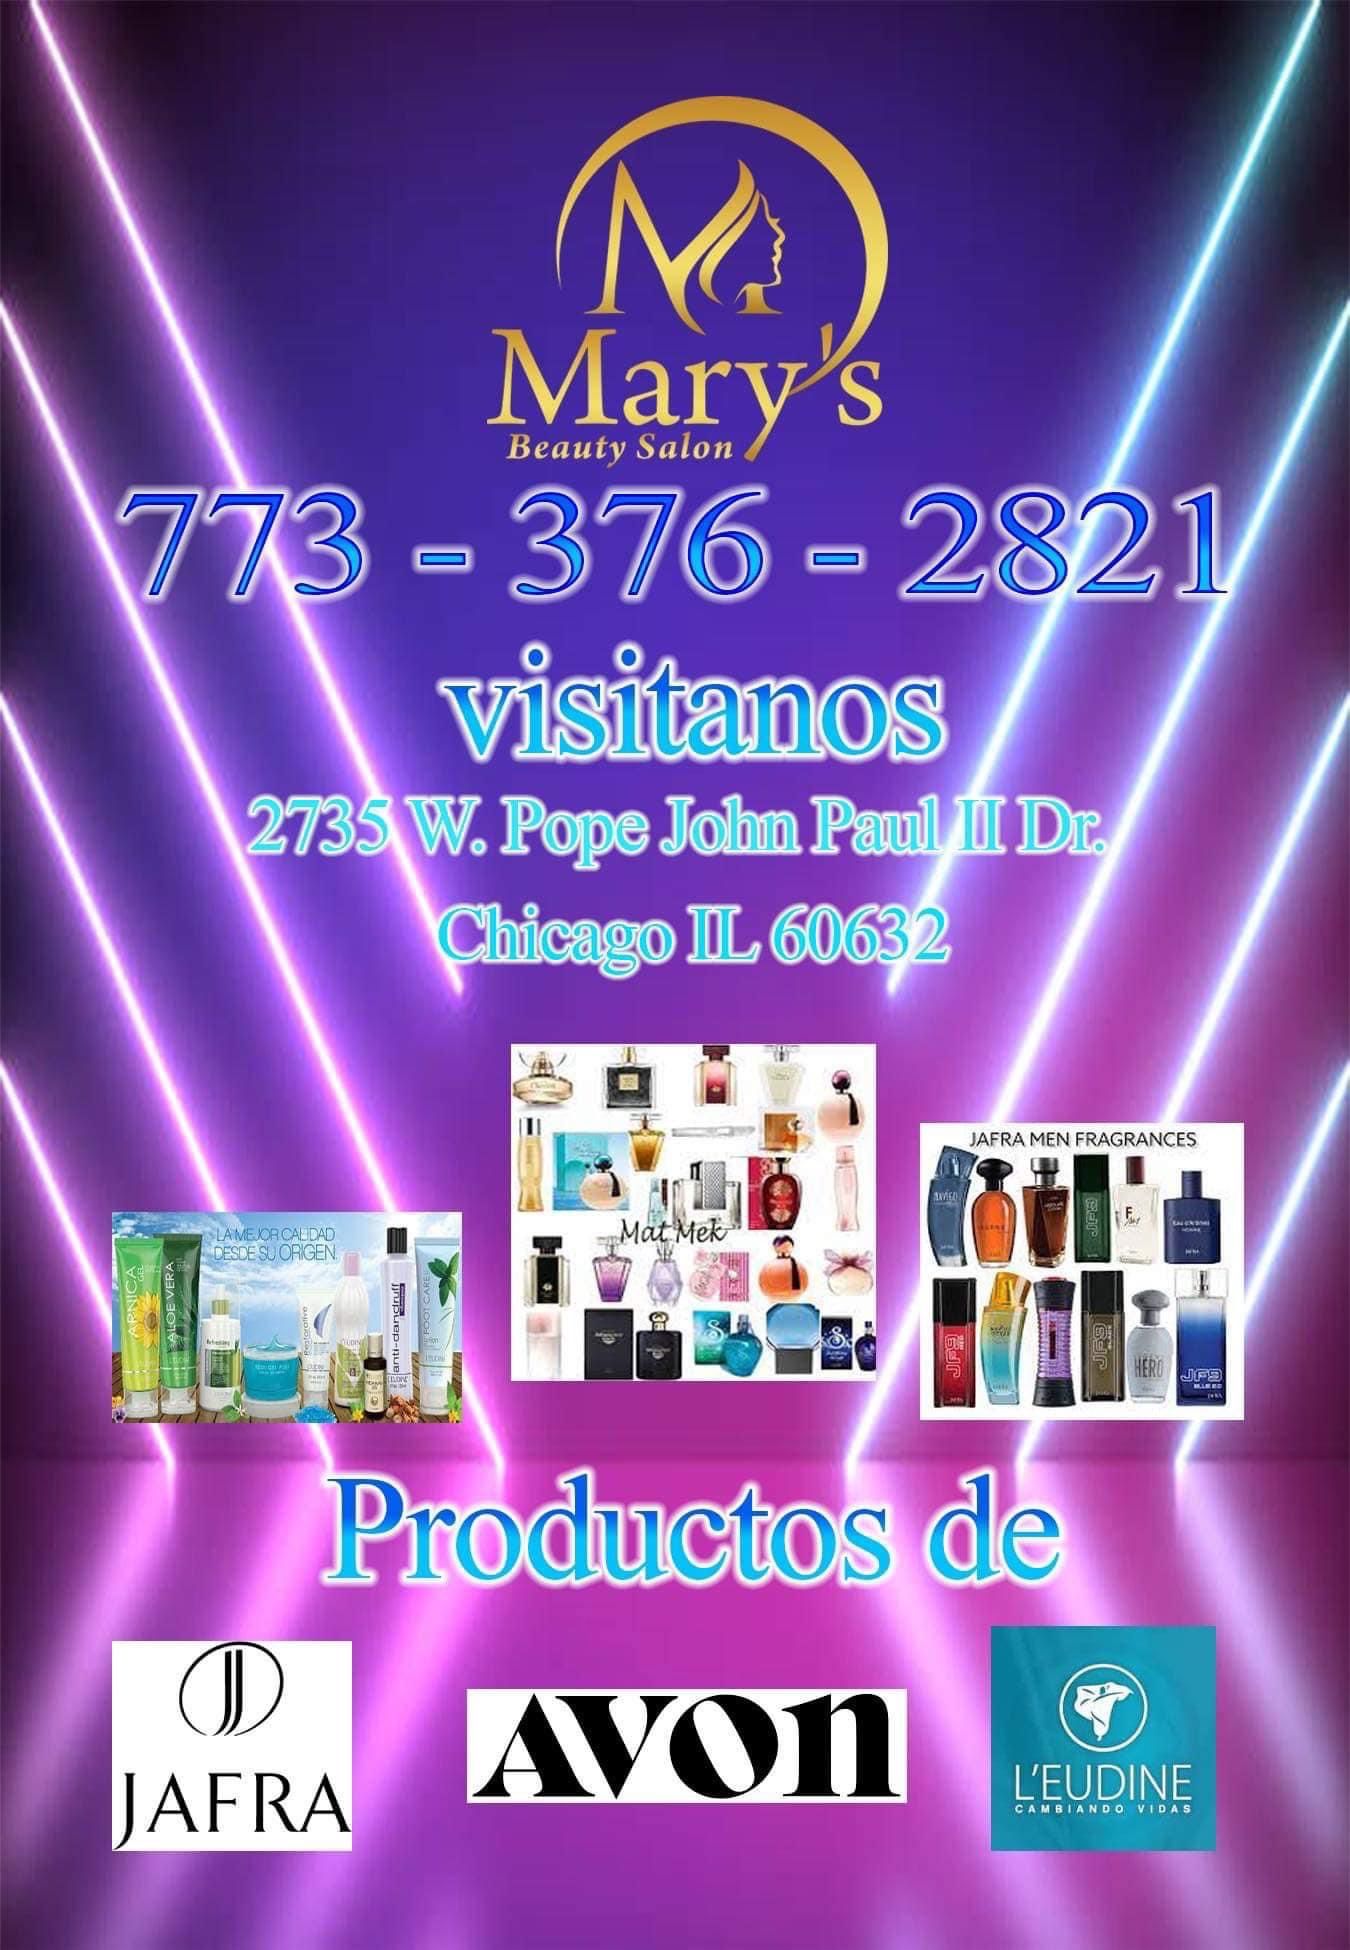 Mary’s Beauty Salon